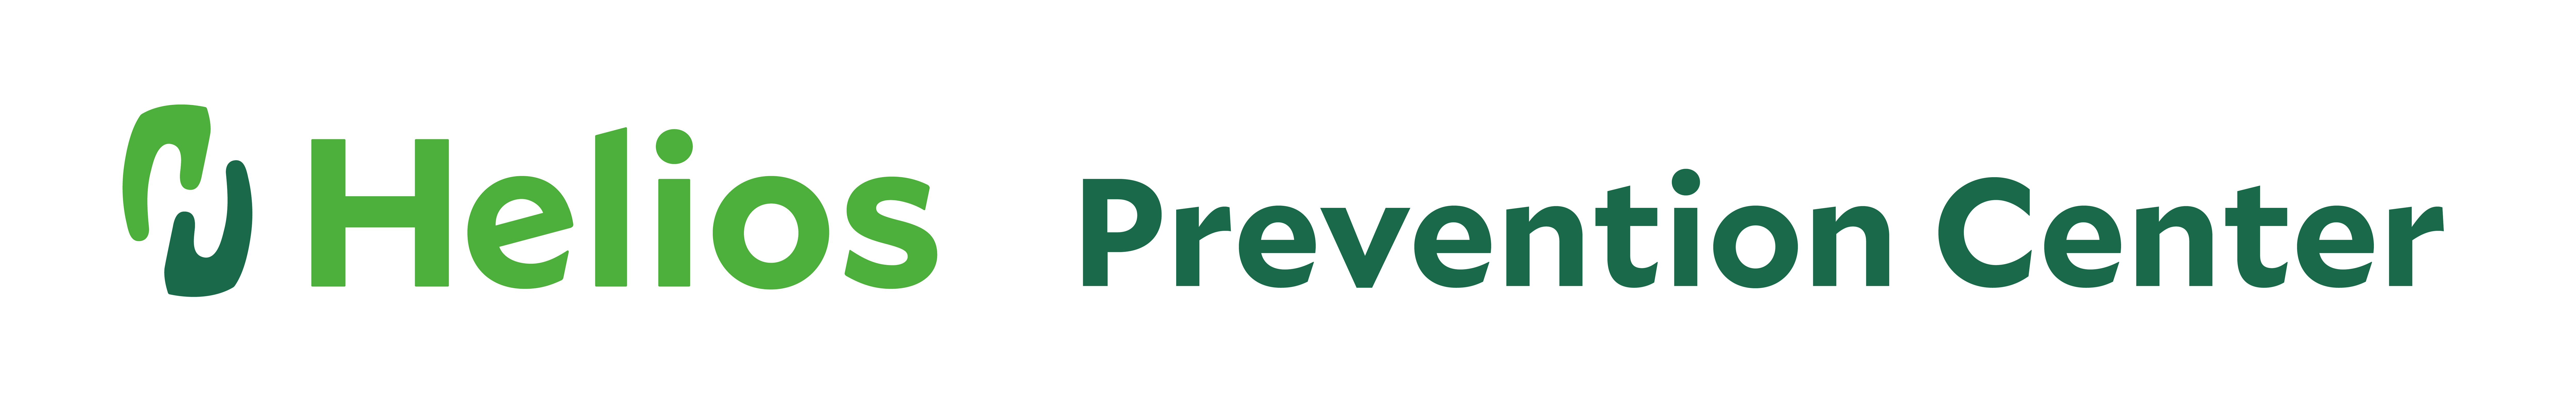 Helios Prevention Center Logo